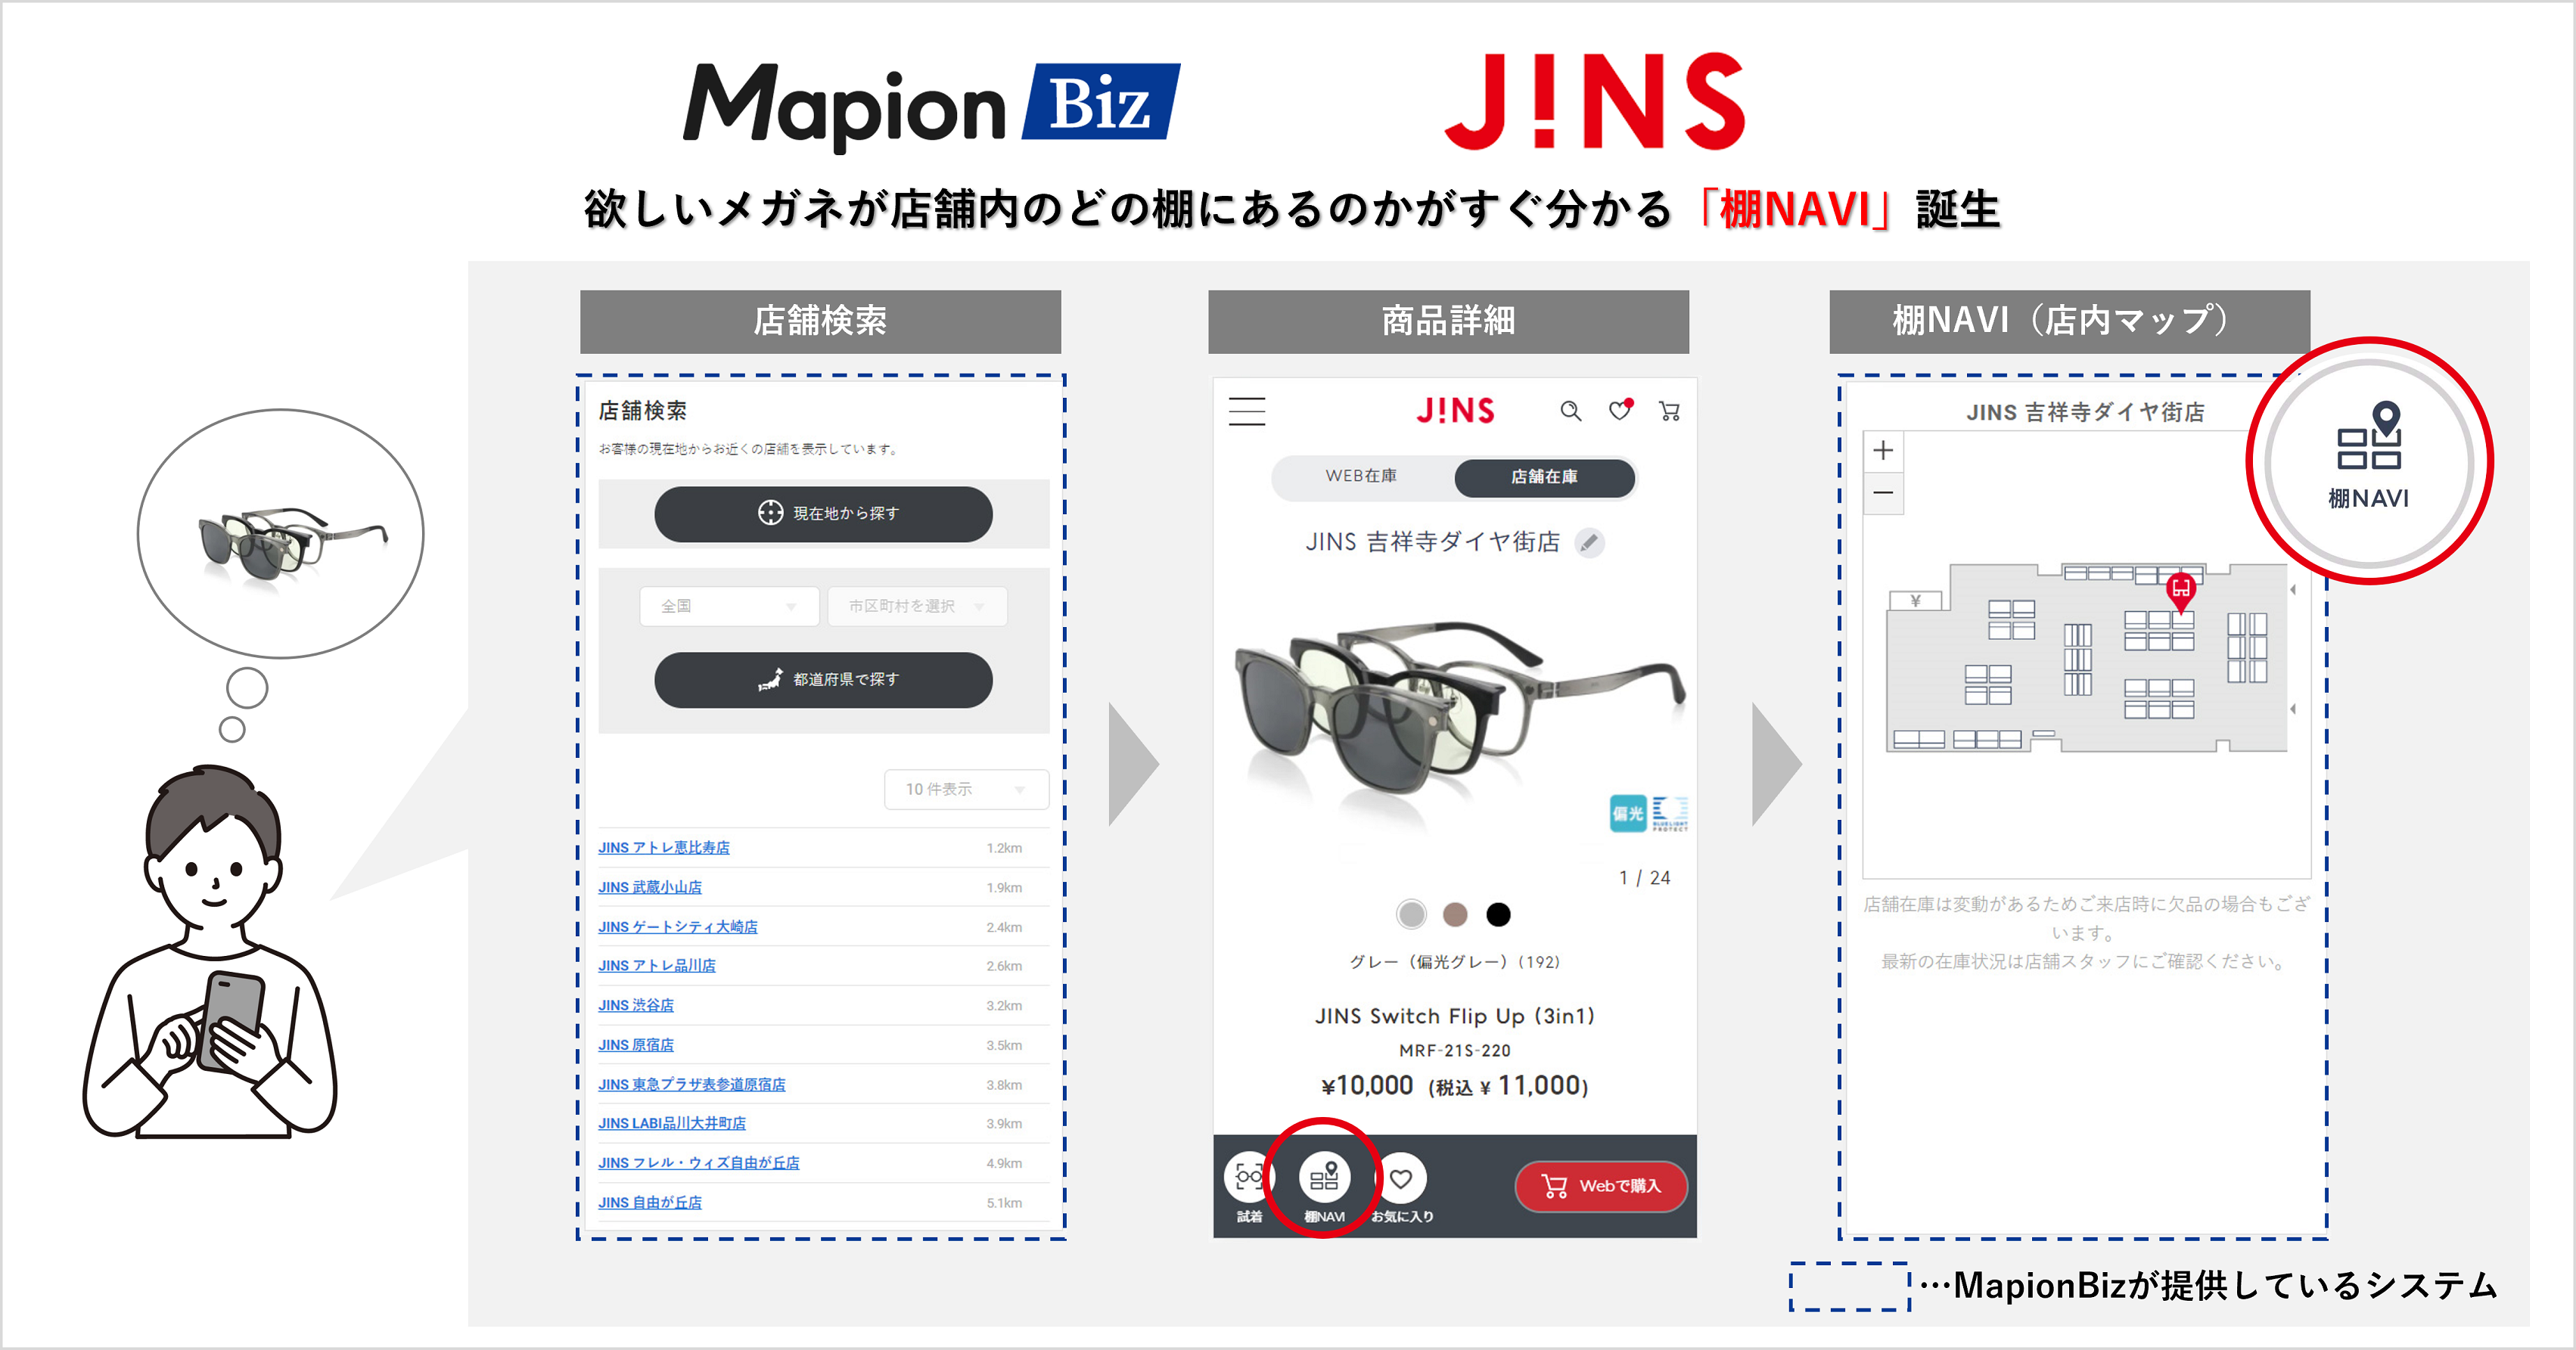 Mapion Biz、JINSにメガネの棚の位置を検索できるシステムを提供